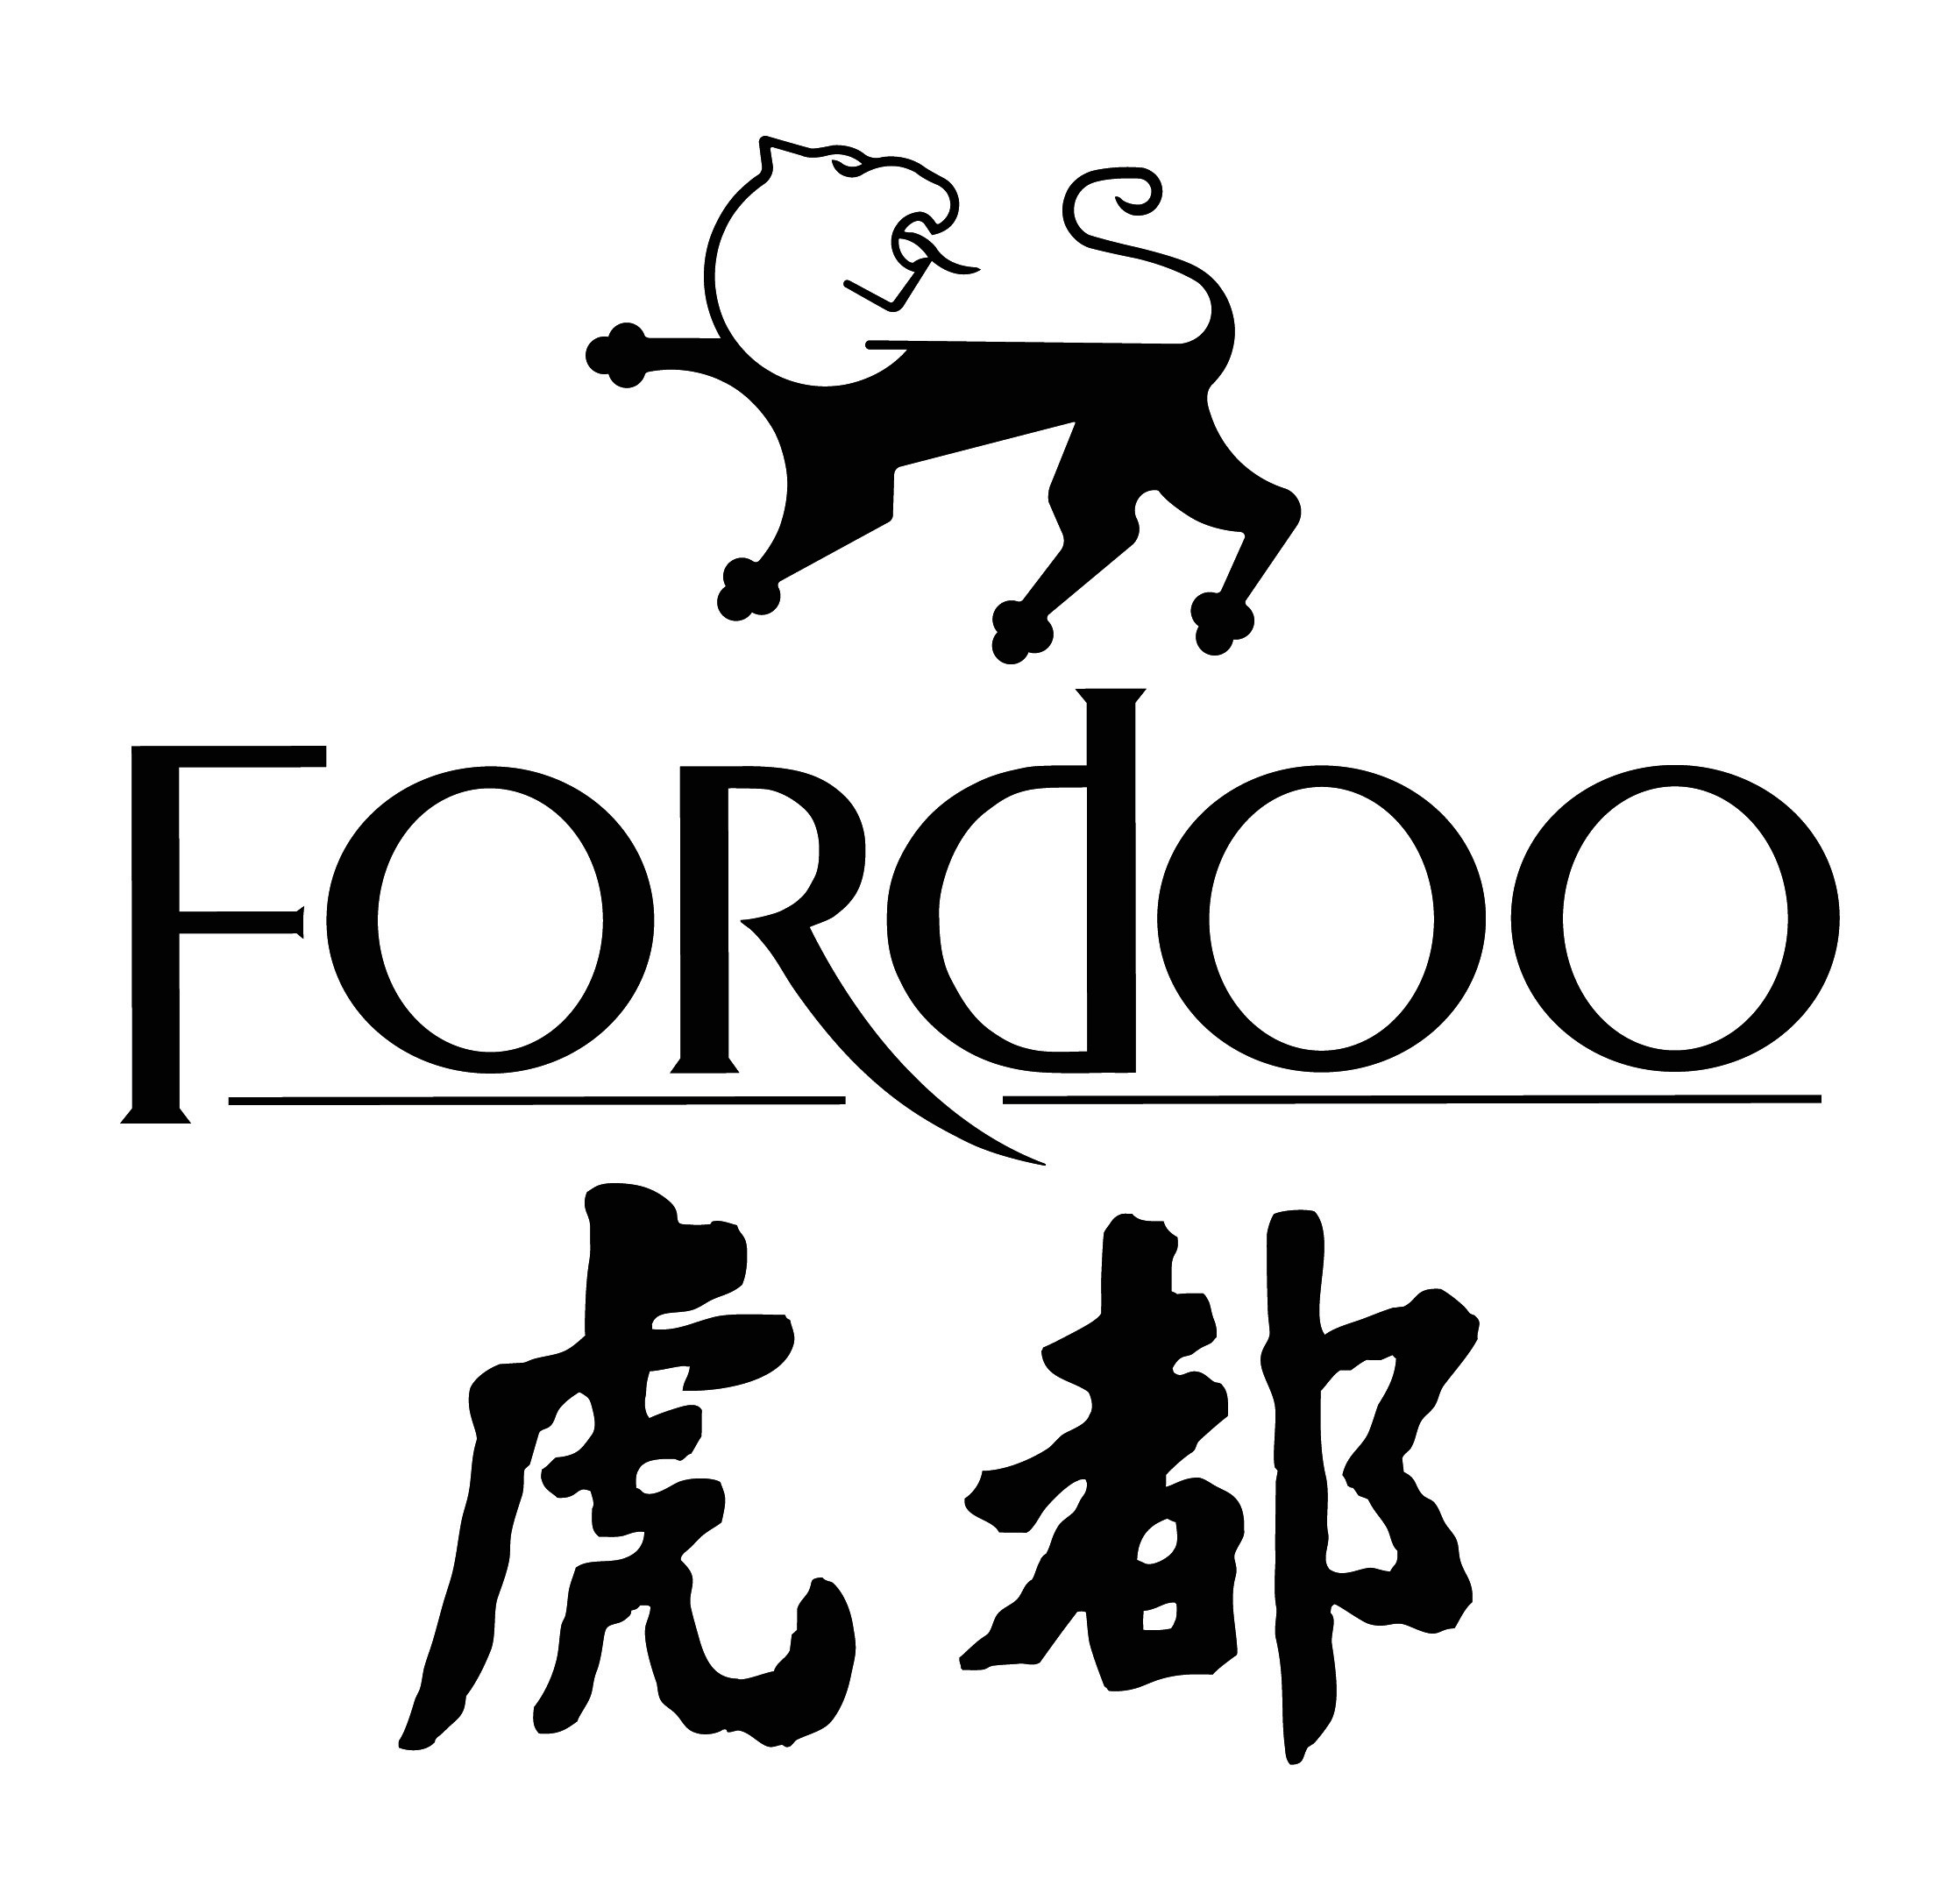 Fordoo-1.jpg